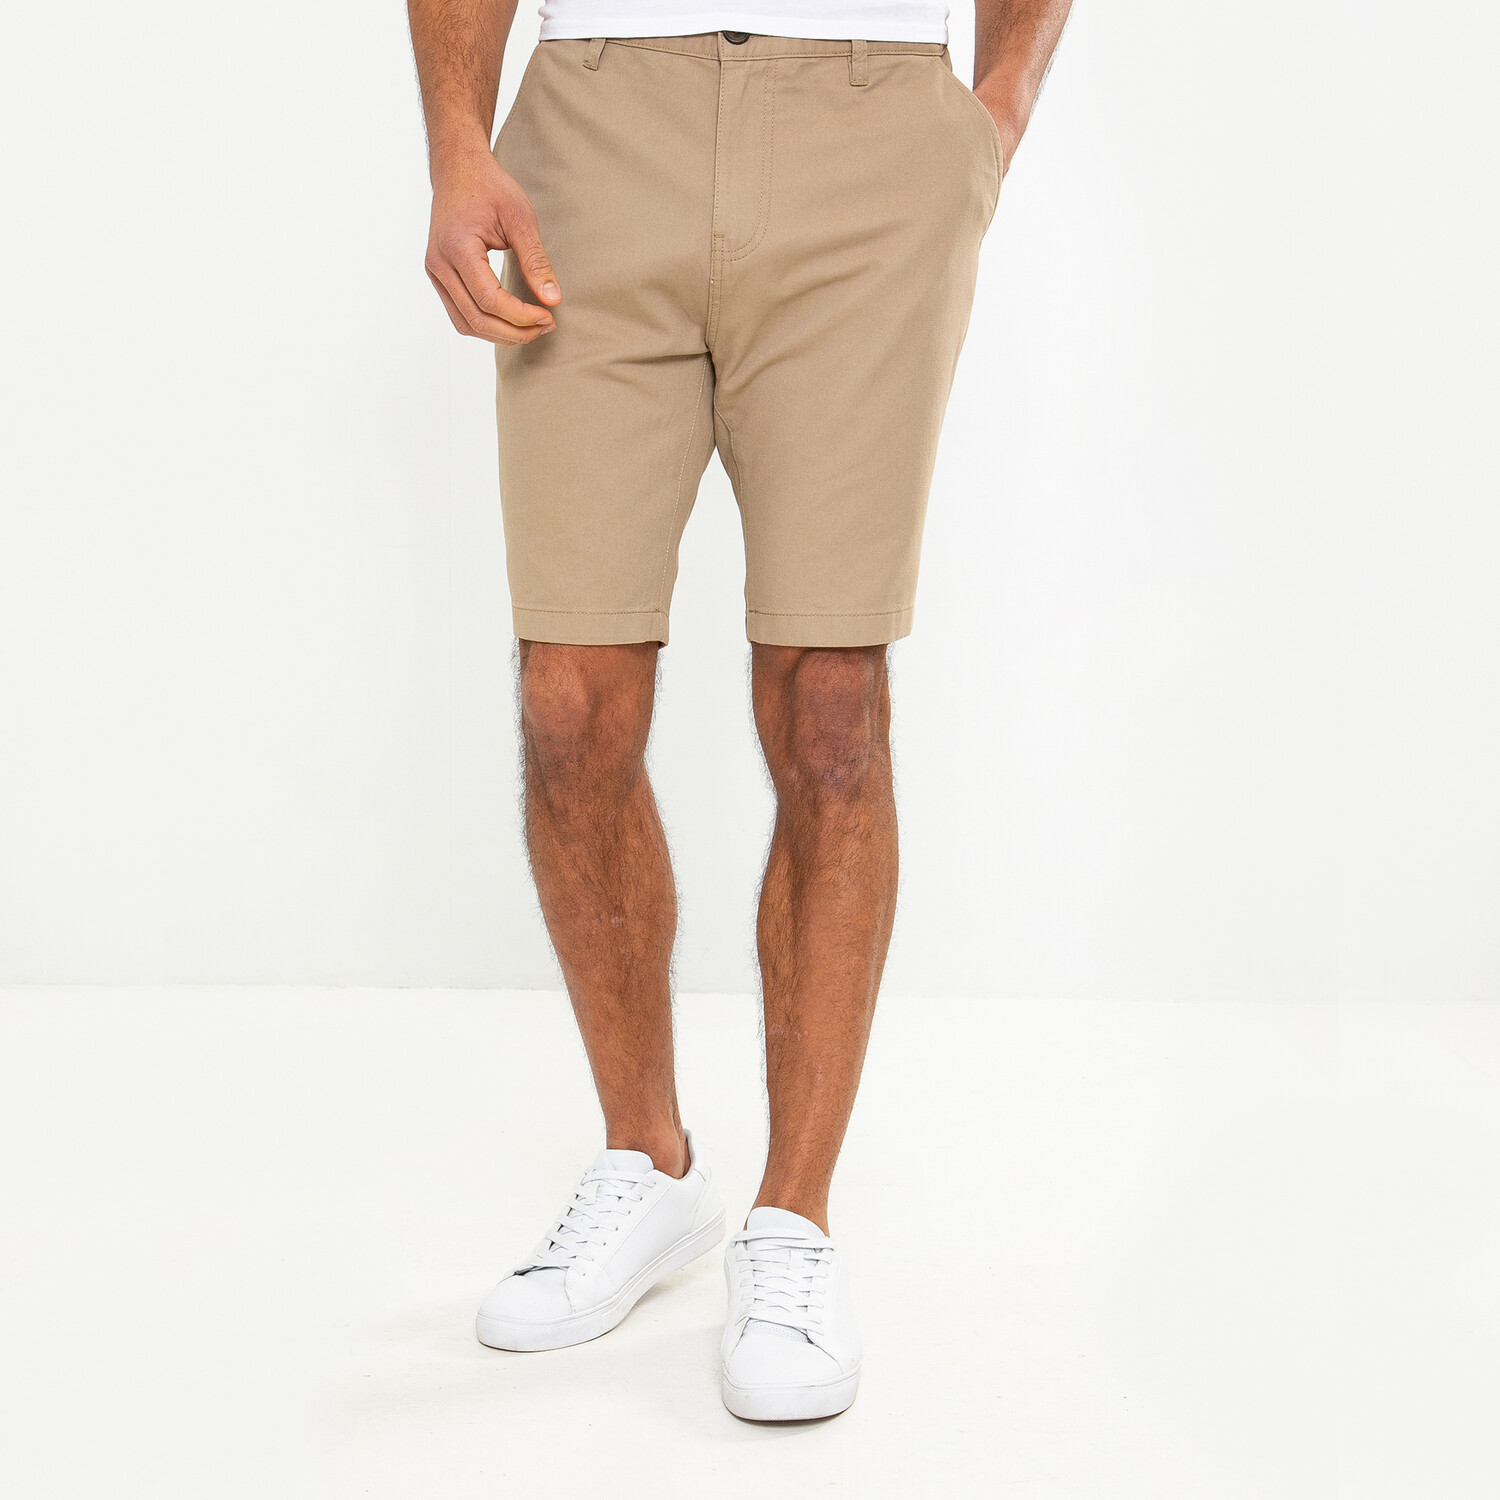 Southsea Men's Cotton Shorts  - Stone / S Image 1